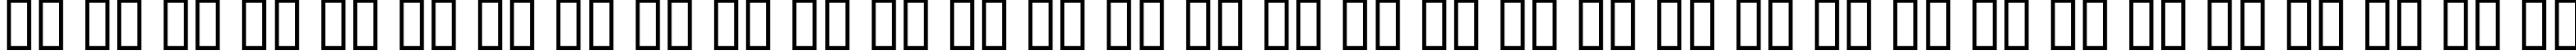 Пример написания русского алфавита шрифтом CircleC